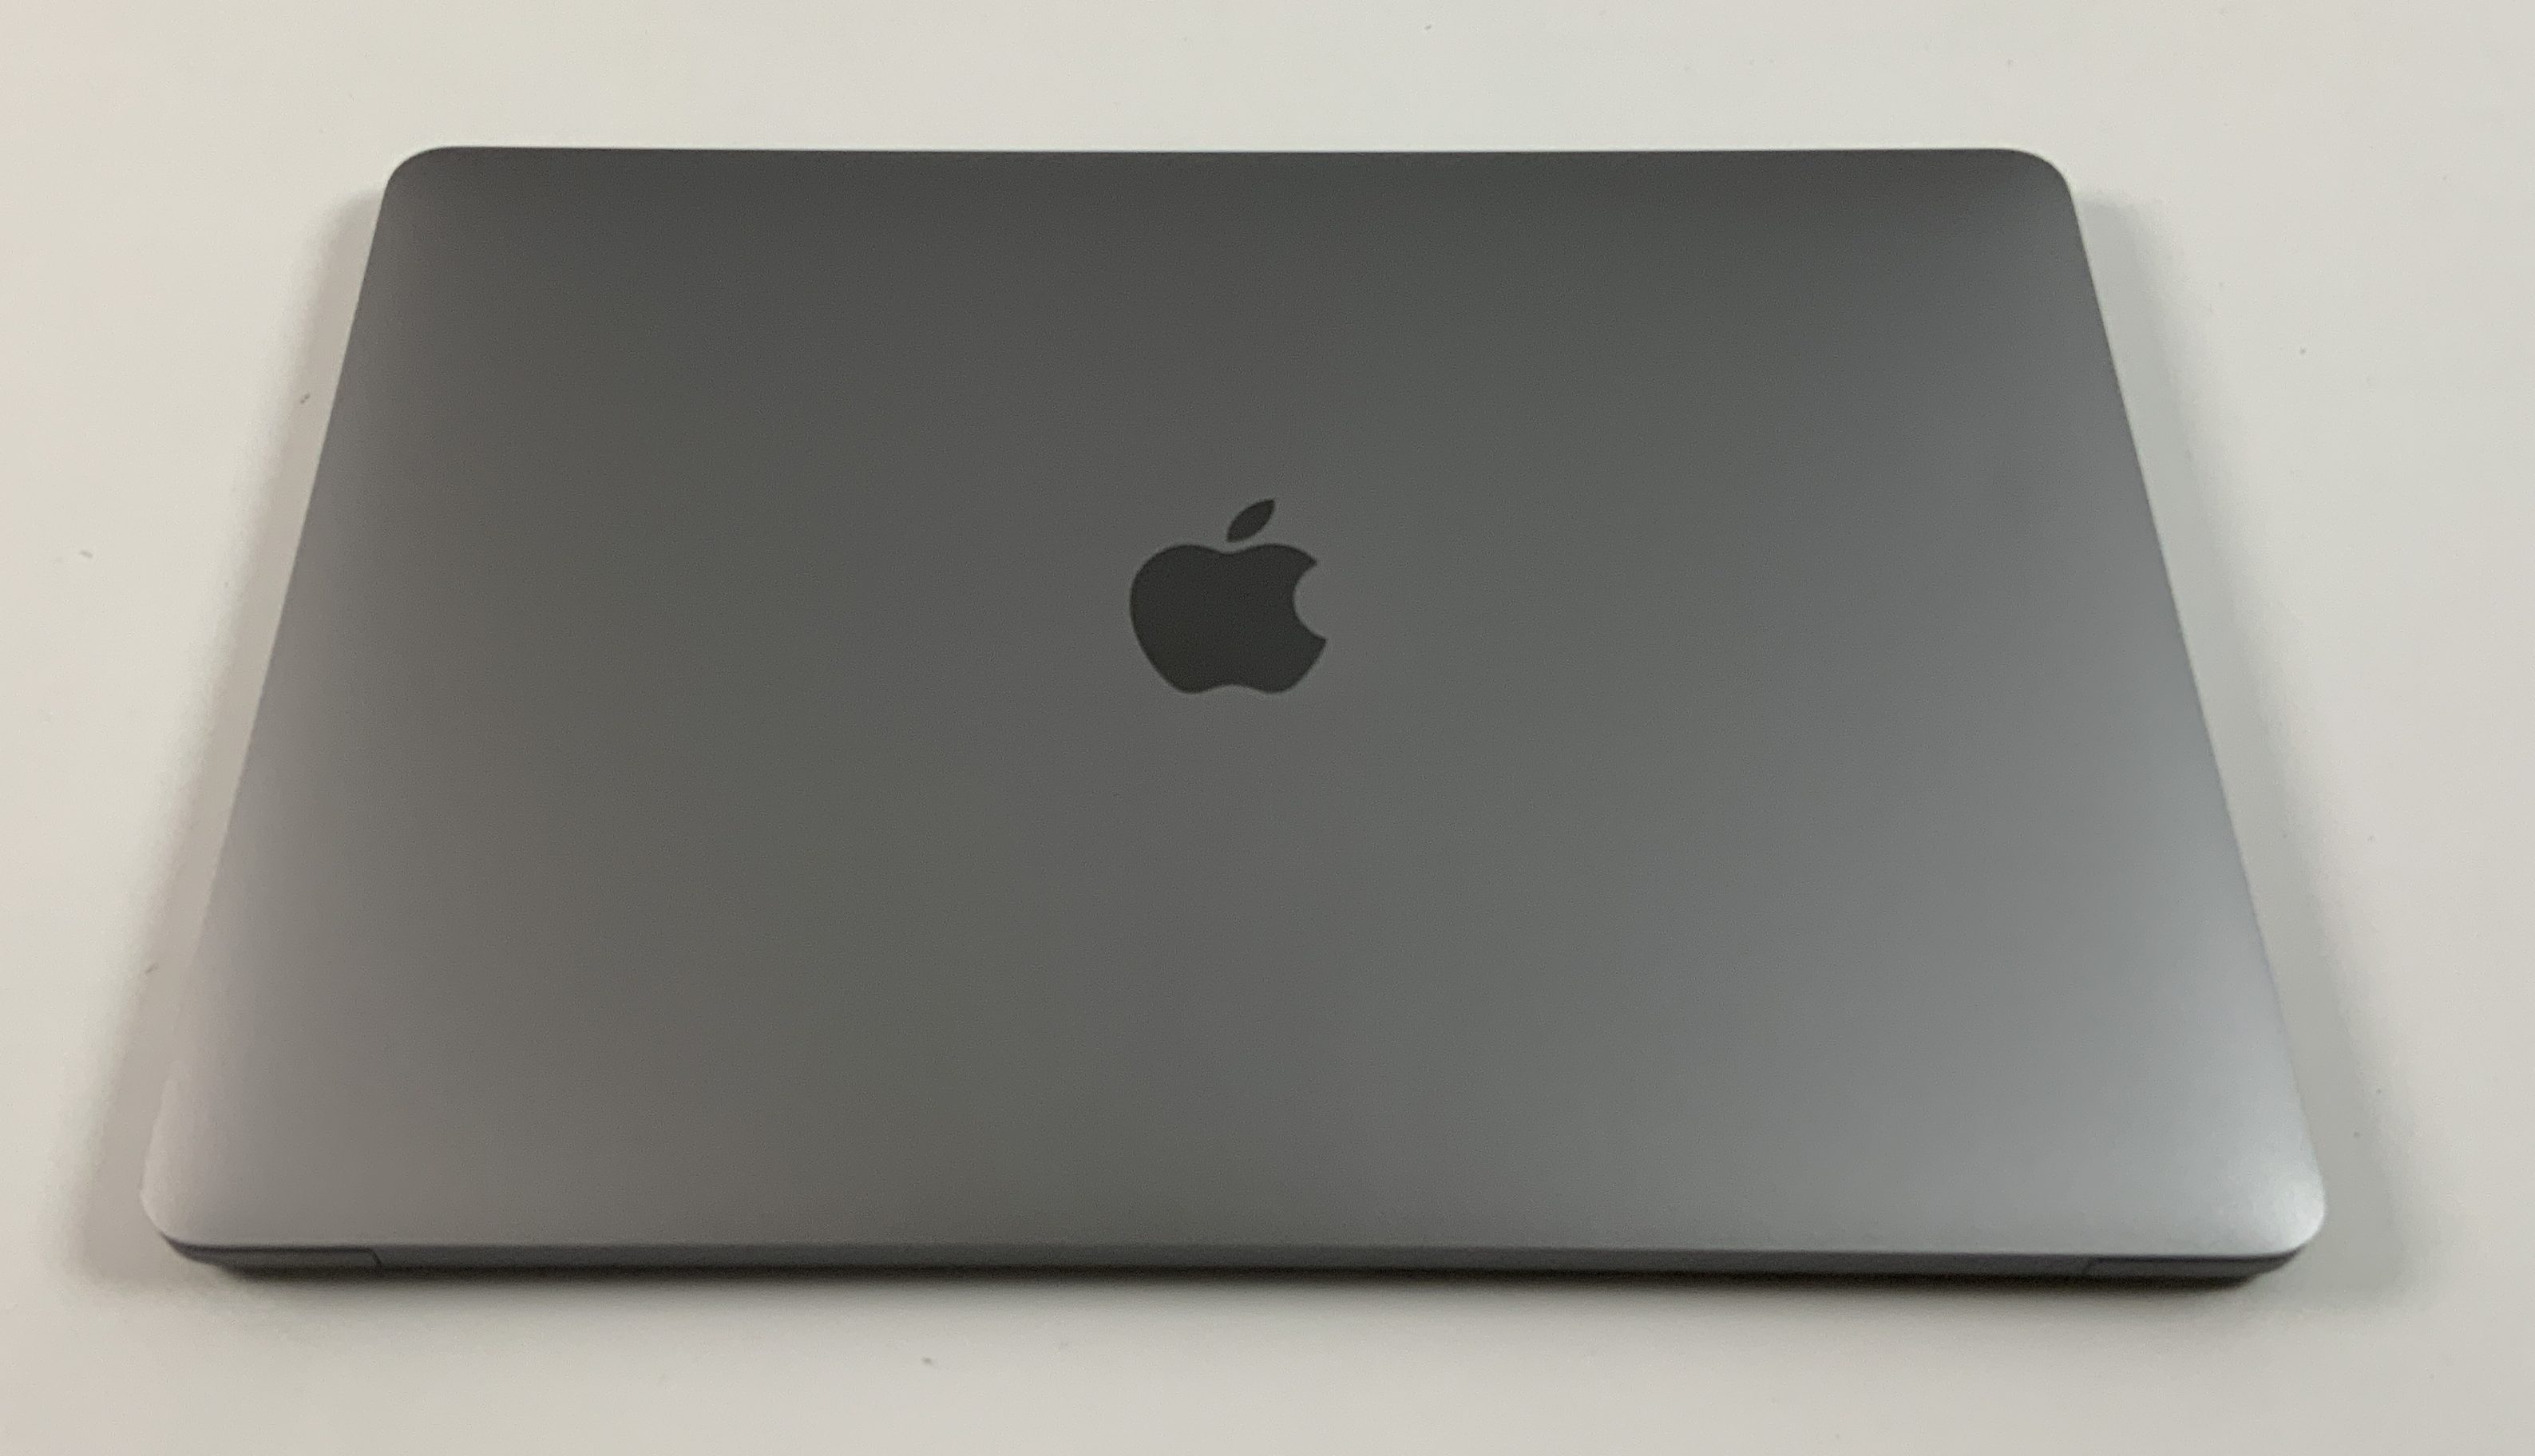 MacBook Pro 13" 4TBT Mid 2019 (Intel Quad-Core i5 2.4 GHz 16 GB RAM 1 TB SSD), Space Gray, Intel Quad-Core i5 2.4 GHz, 16 GB RAM, 1 TB SSD, obraz 2